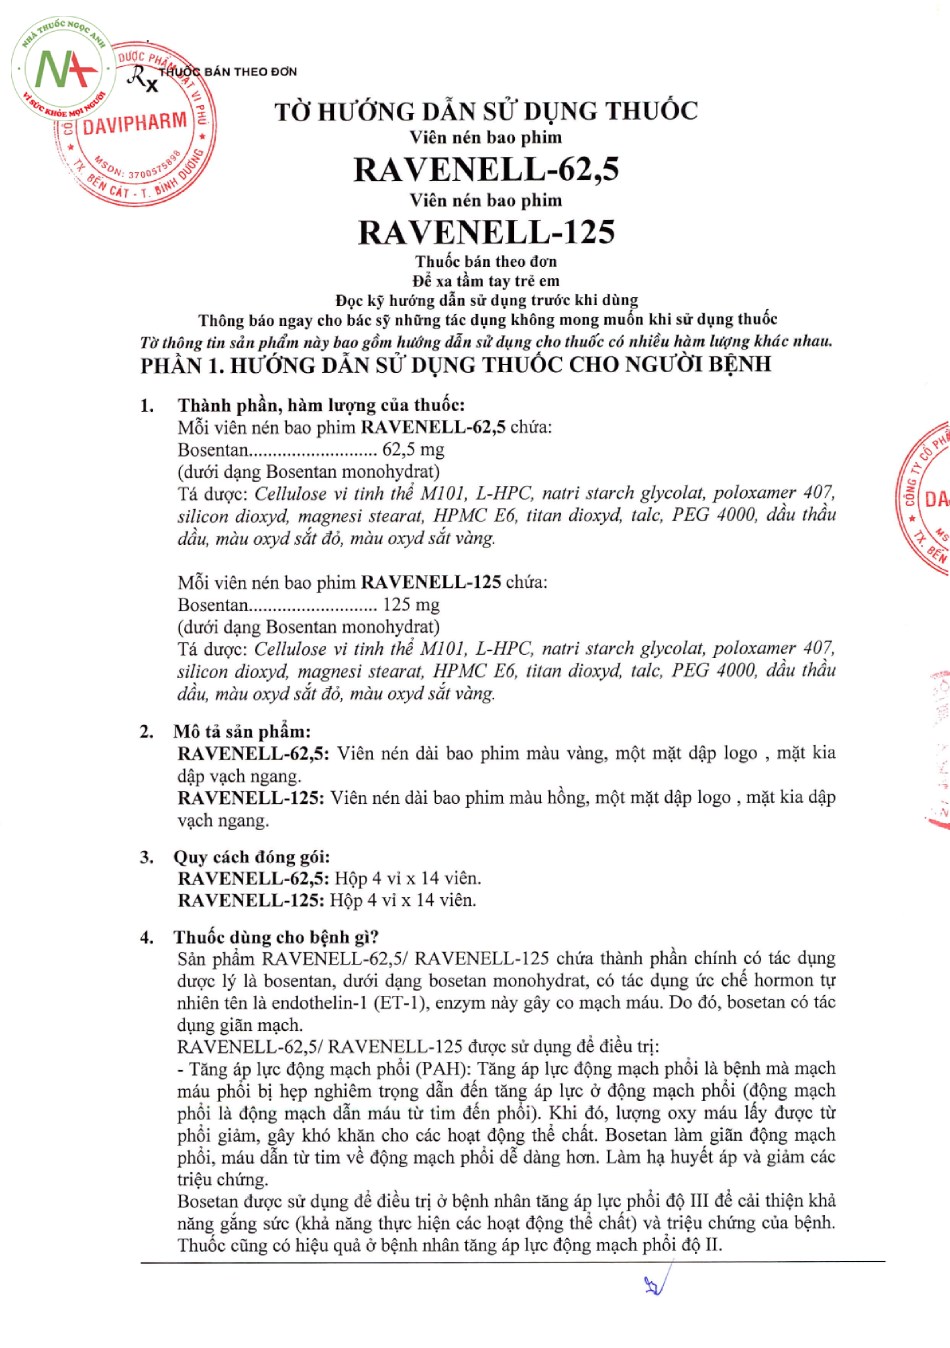 Hướng dẫn sử dụng thuốc Ravenell-125